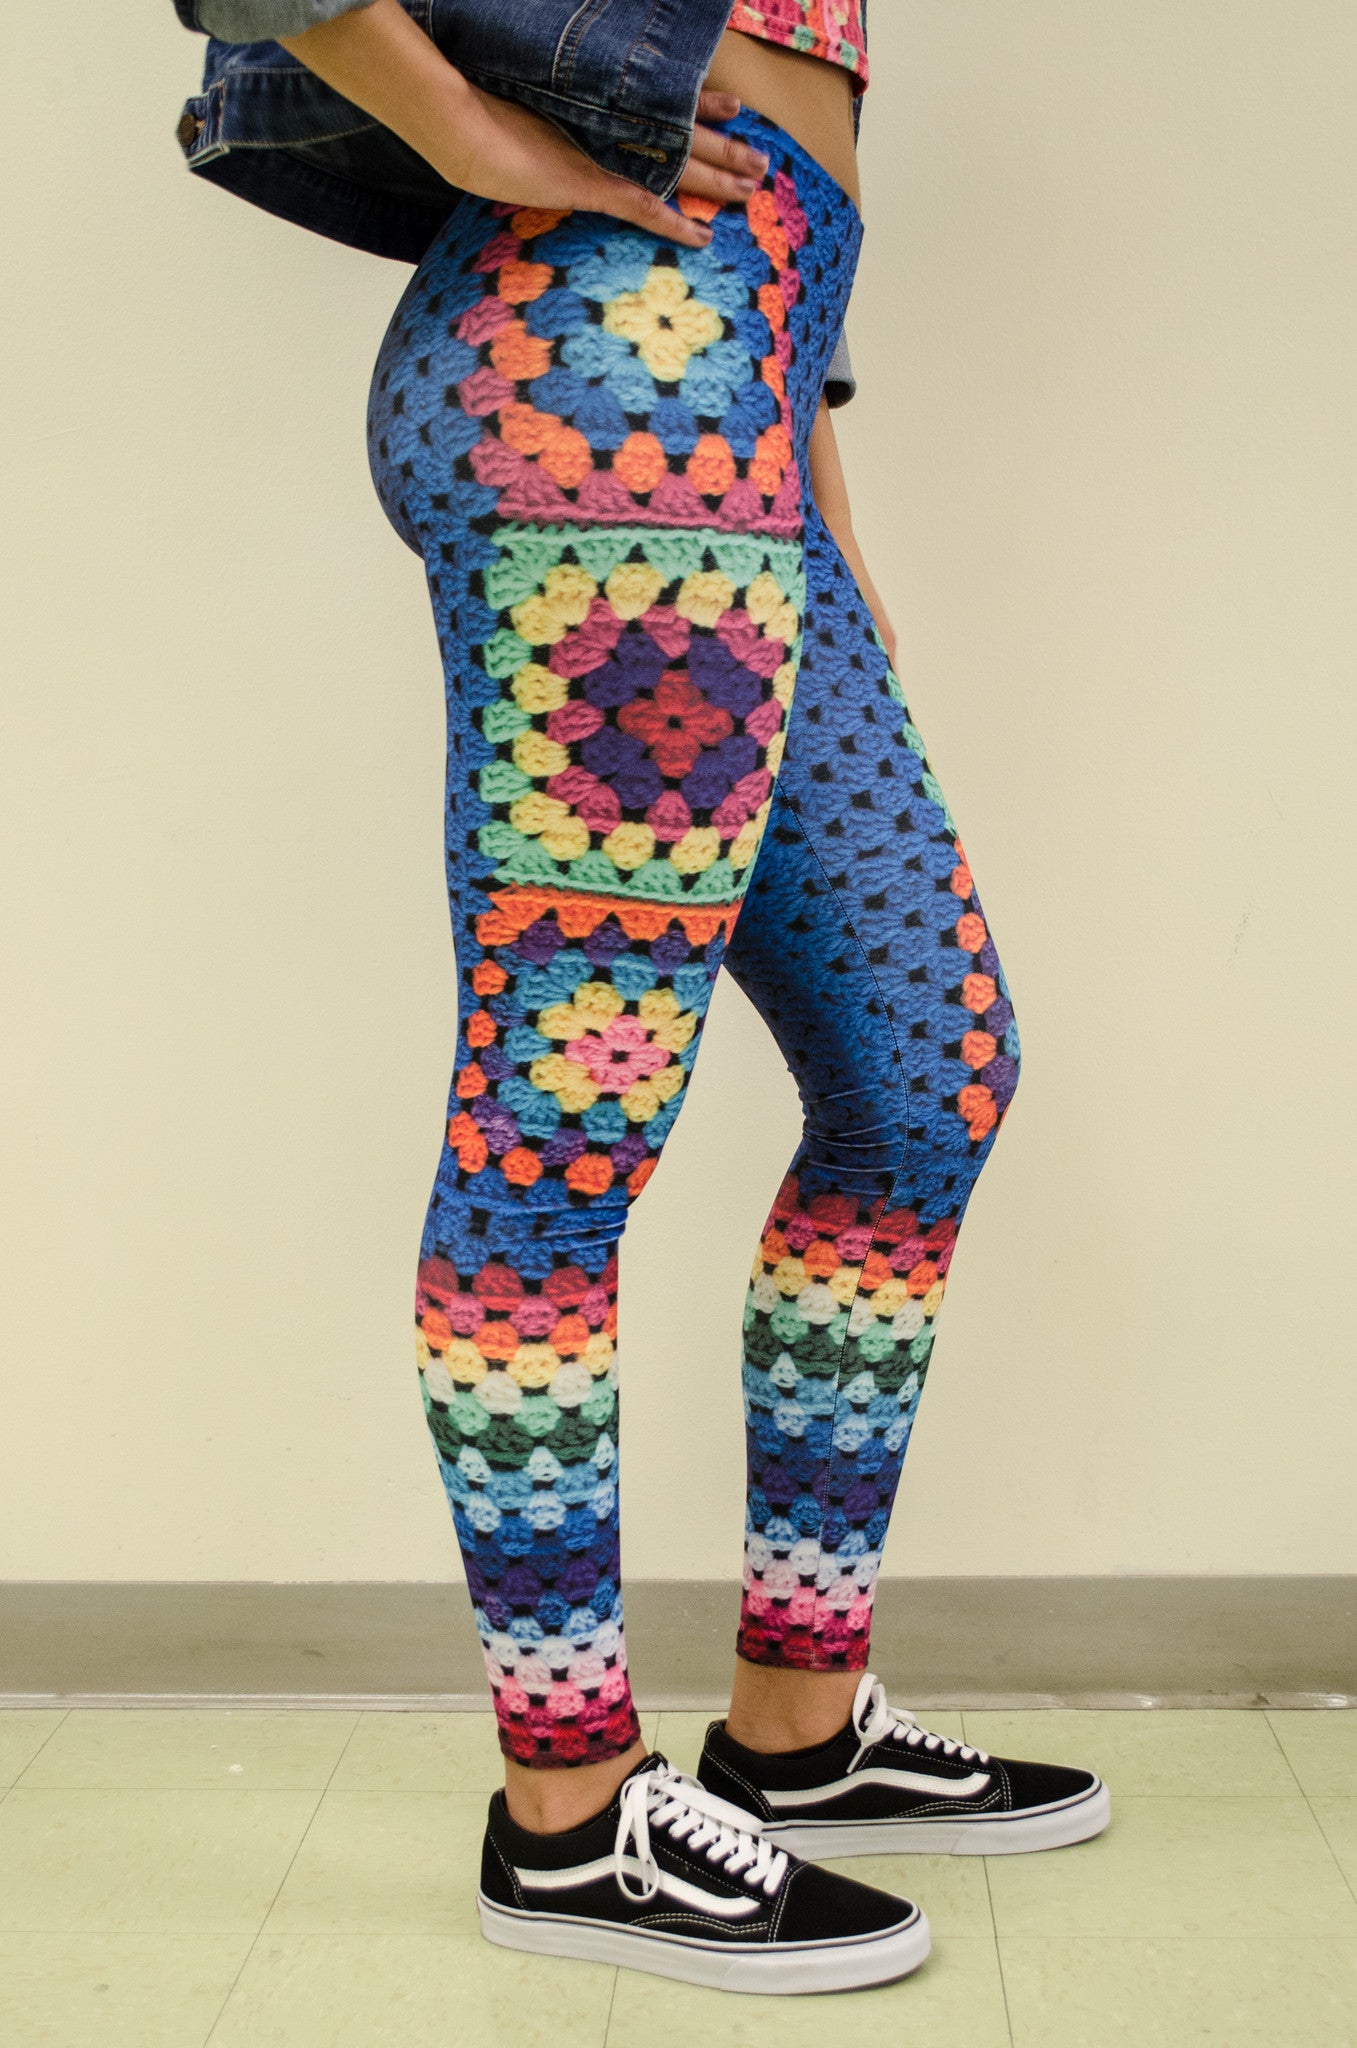 Beulah' Crochet Print Granny Square Leggings